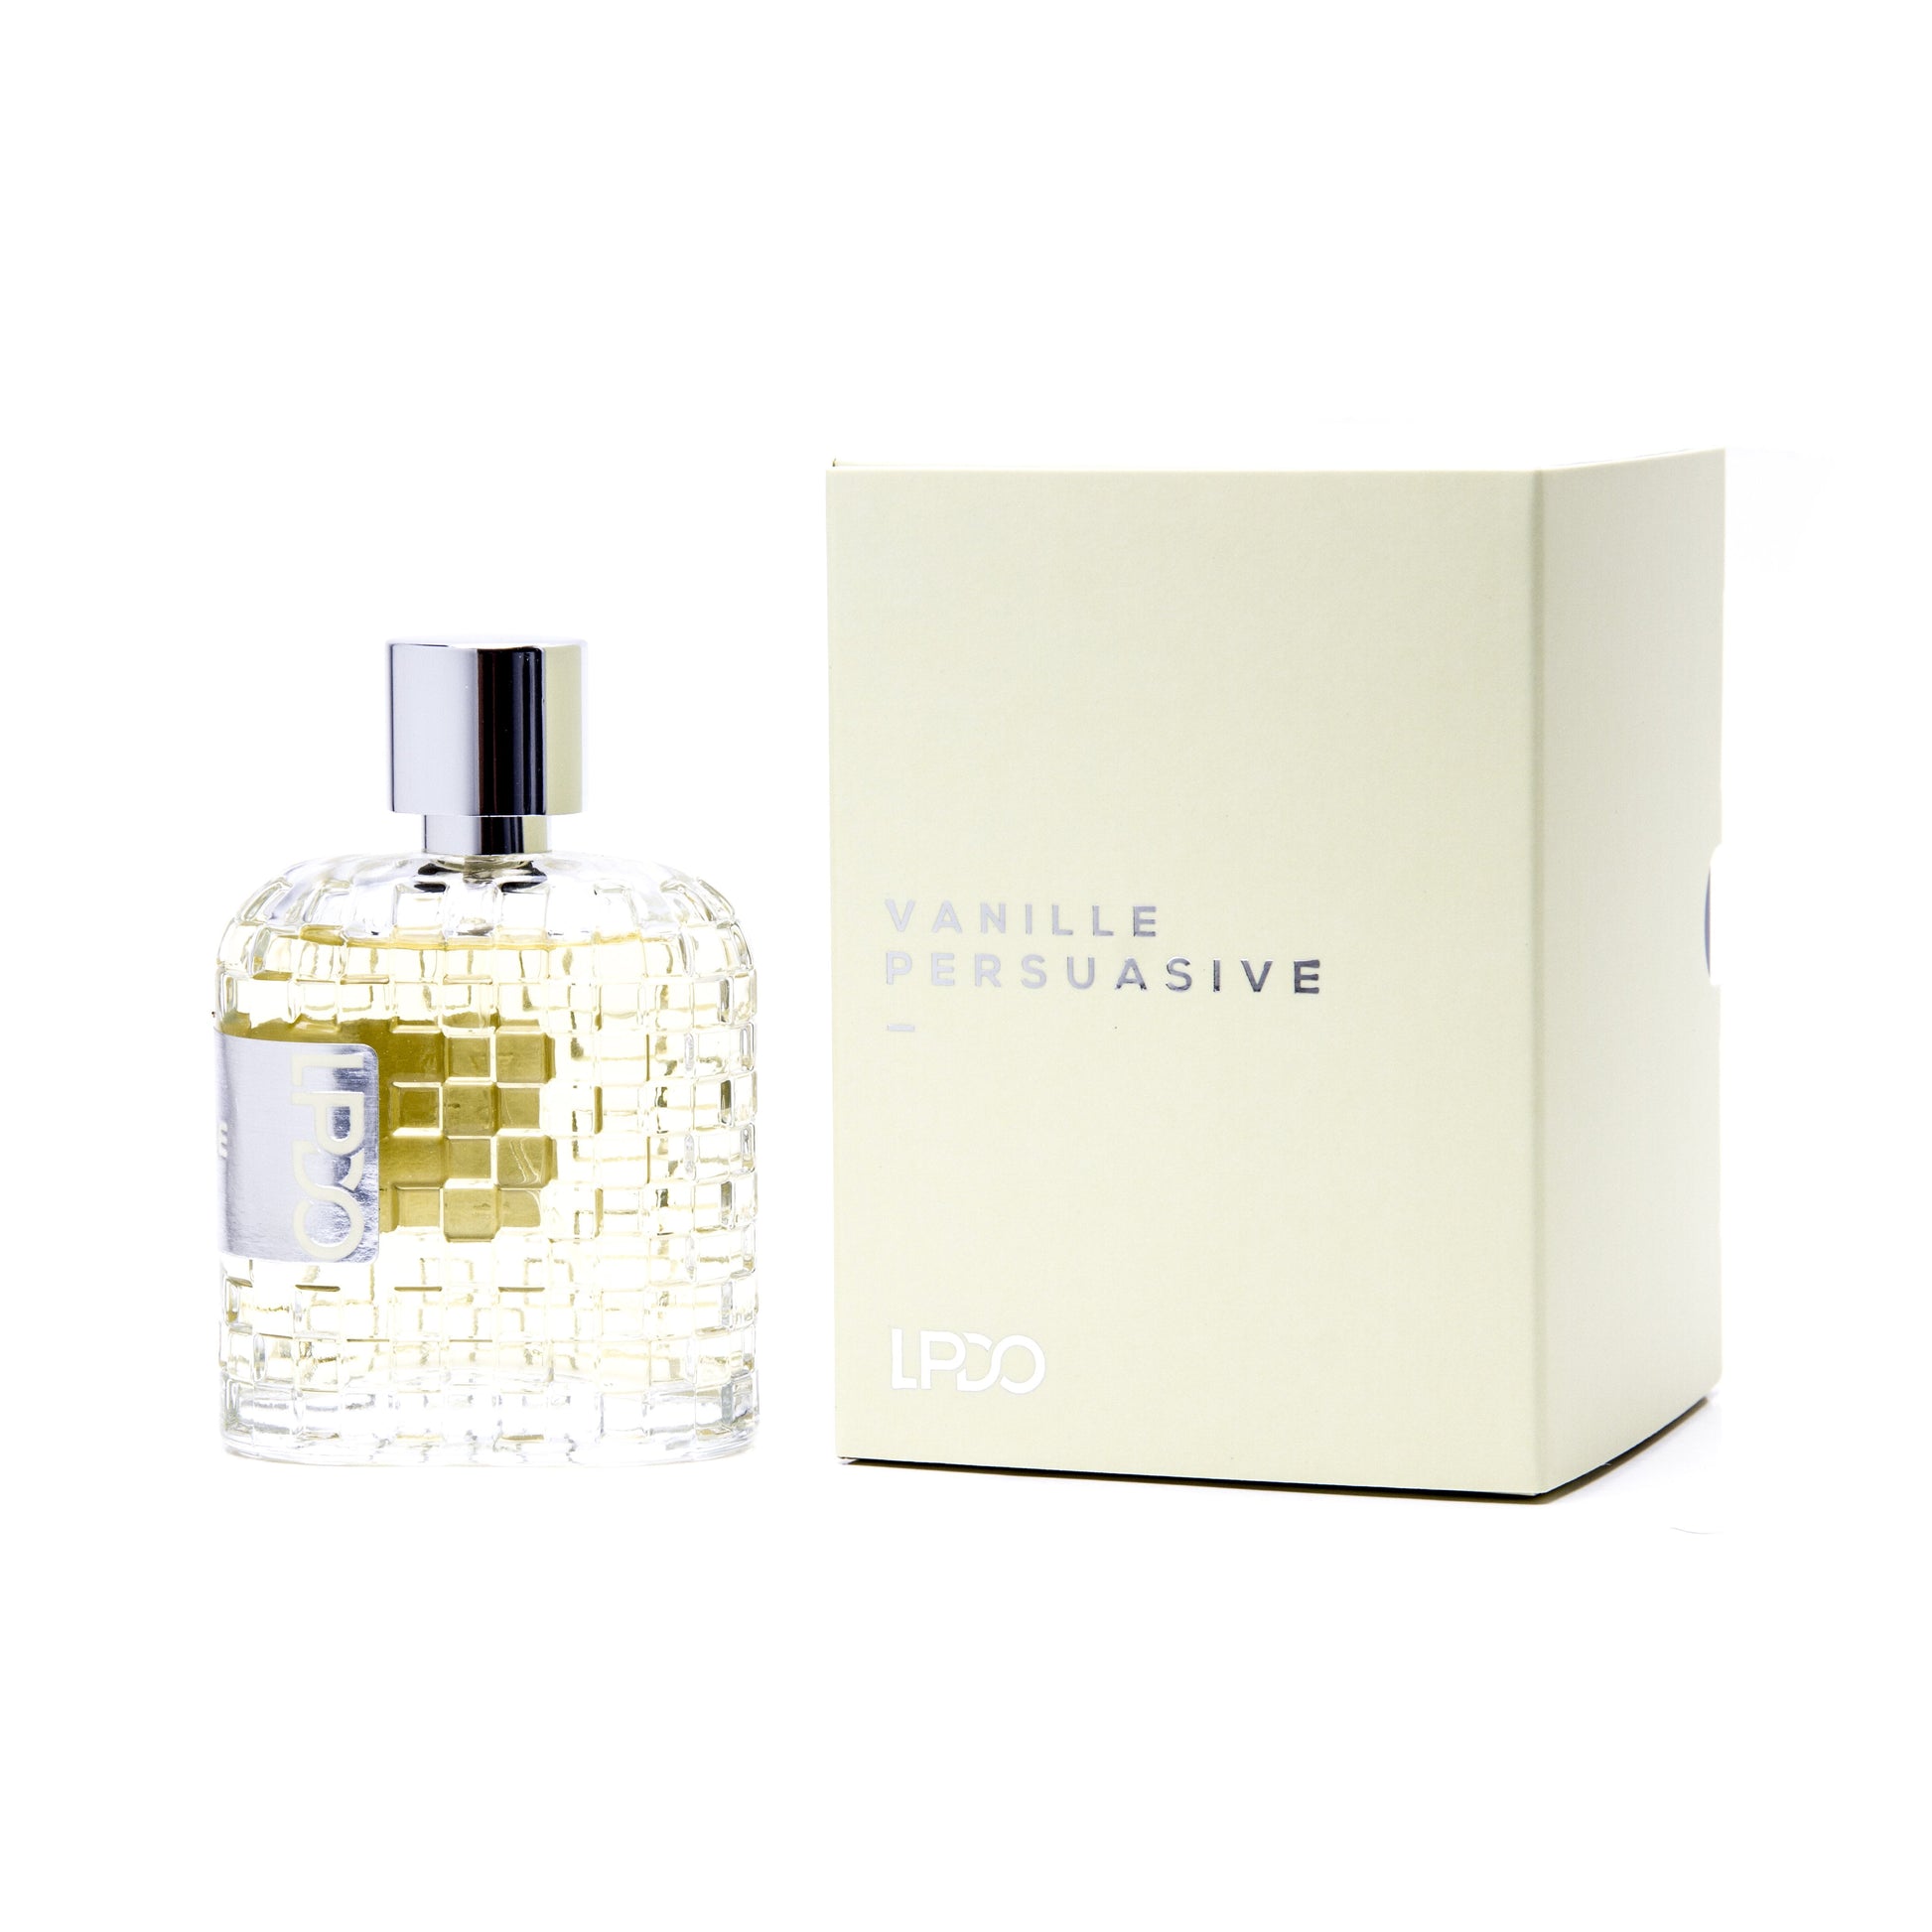 LPDO Vanille Persuasive Eau de Parfum Spray for Men, Product image 1